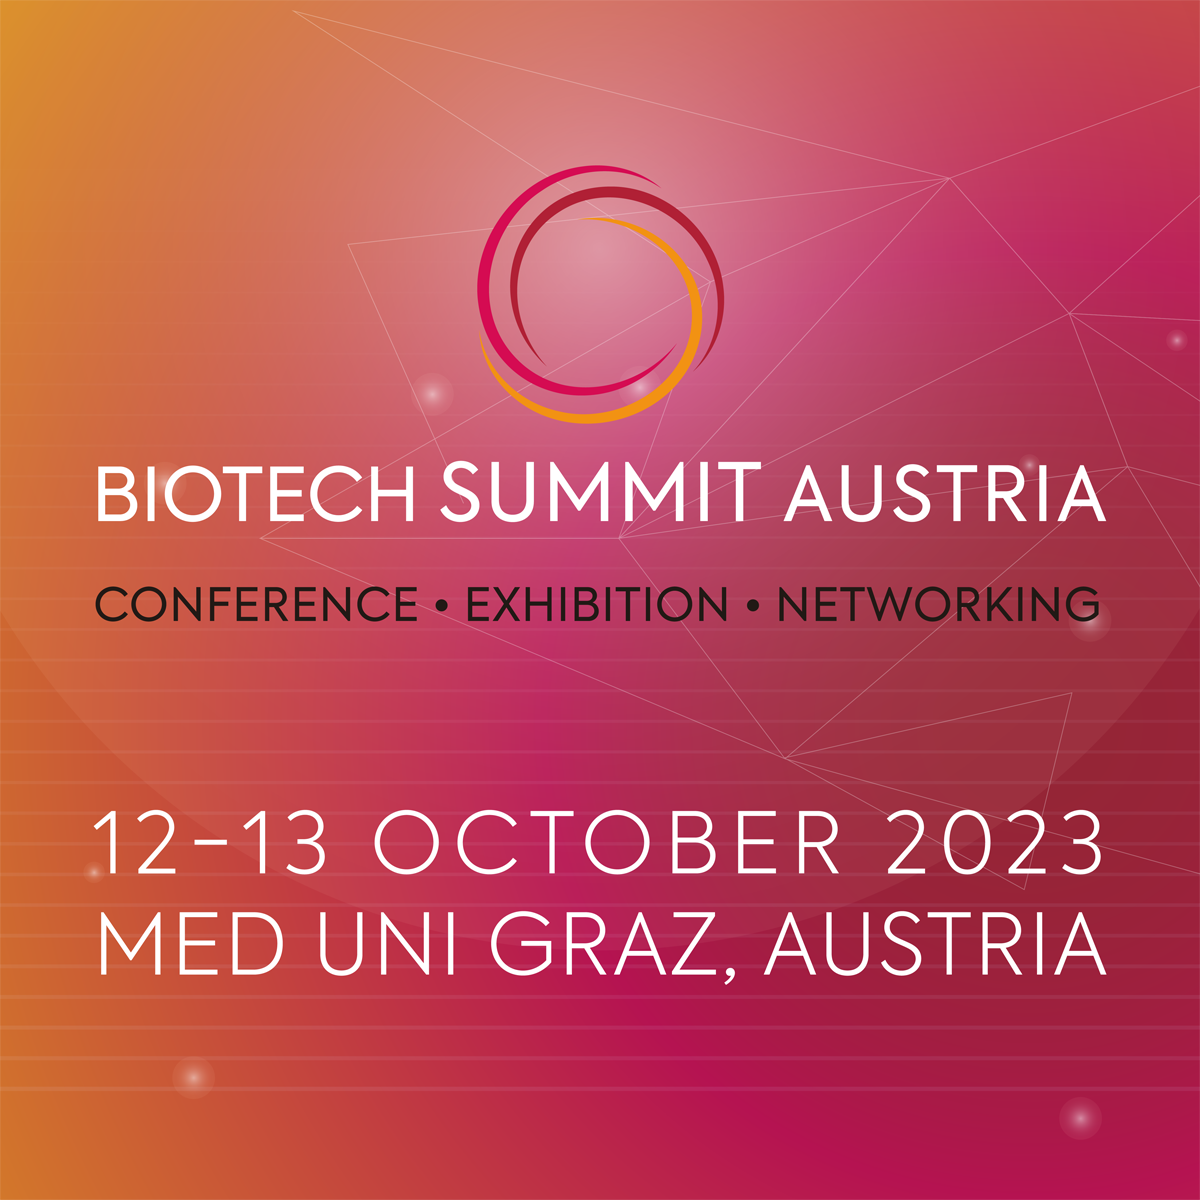 1. Biotech Summit Austria